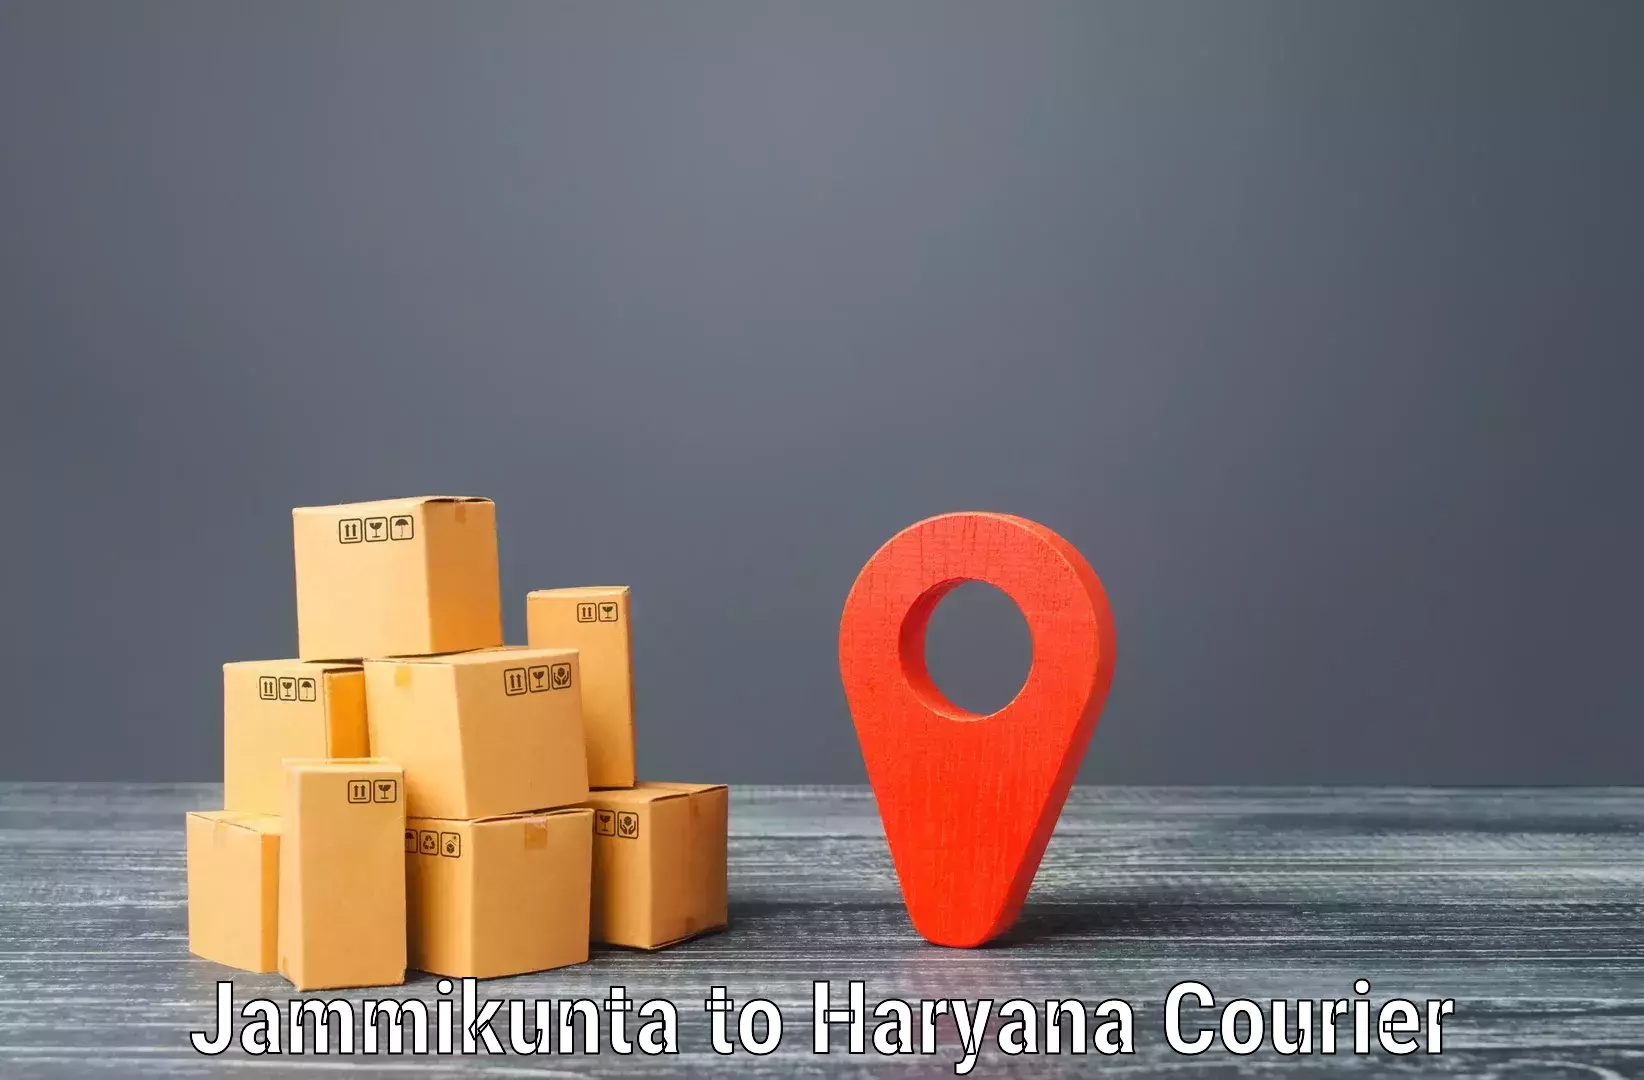 Flexible parcel services Jammikunta to Mahendragarh